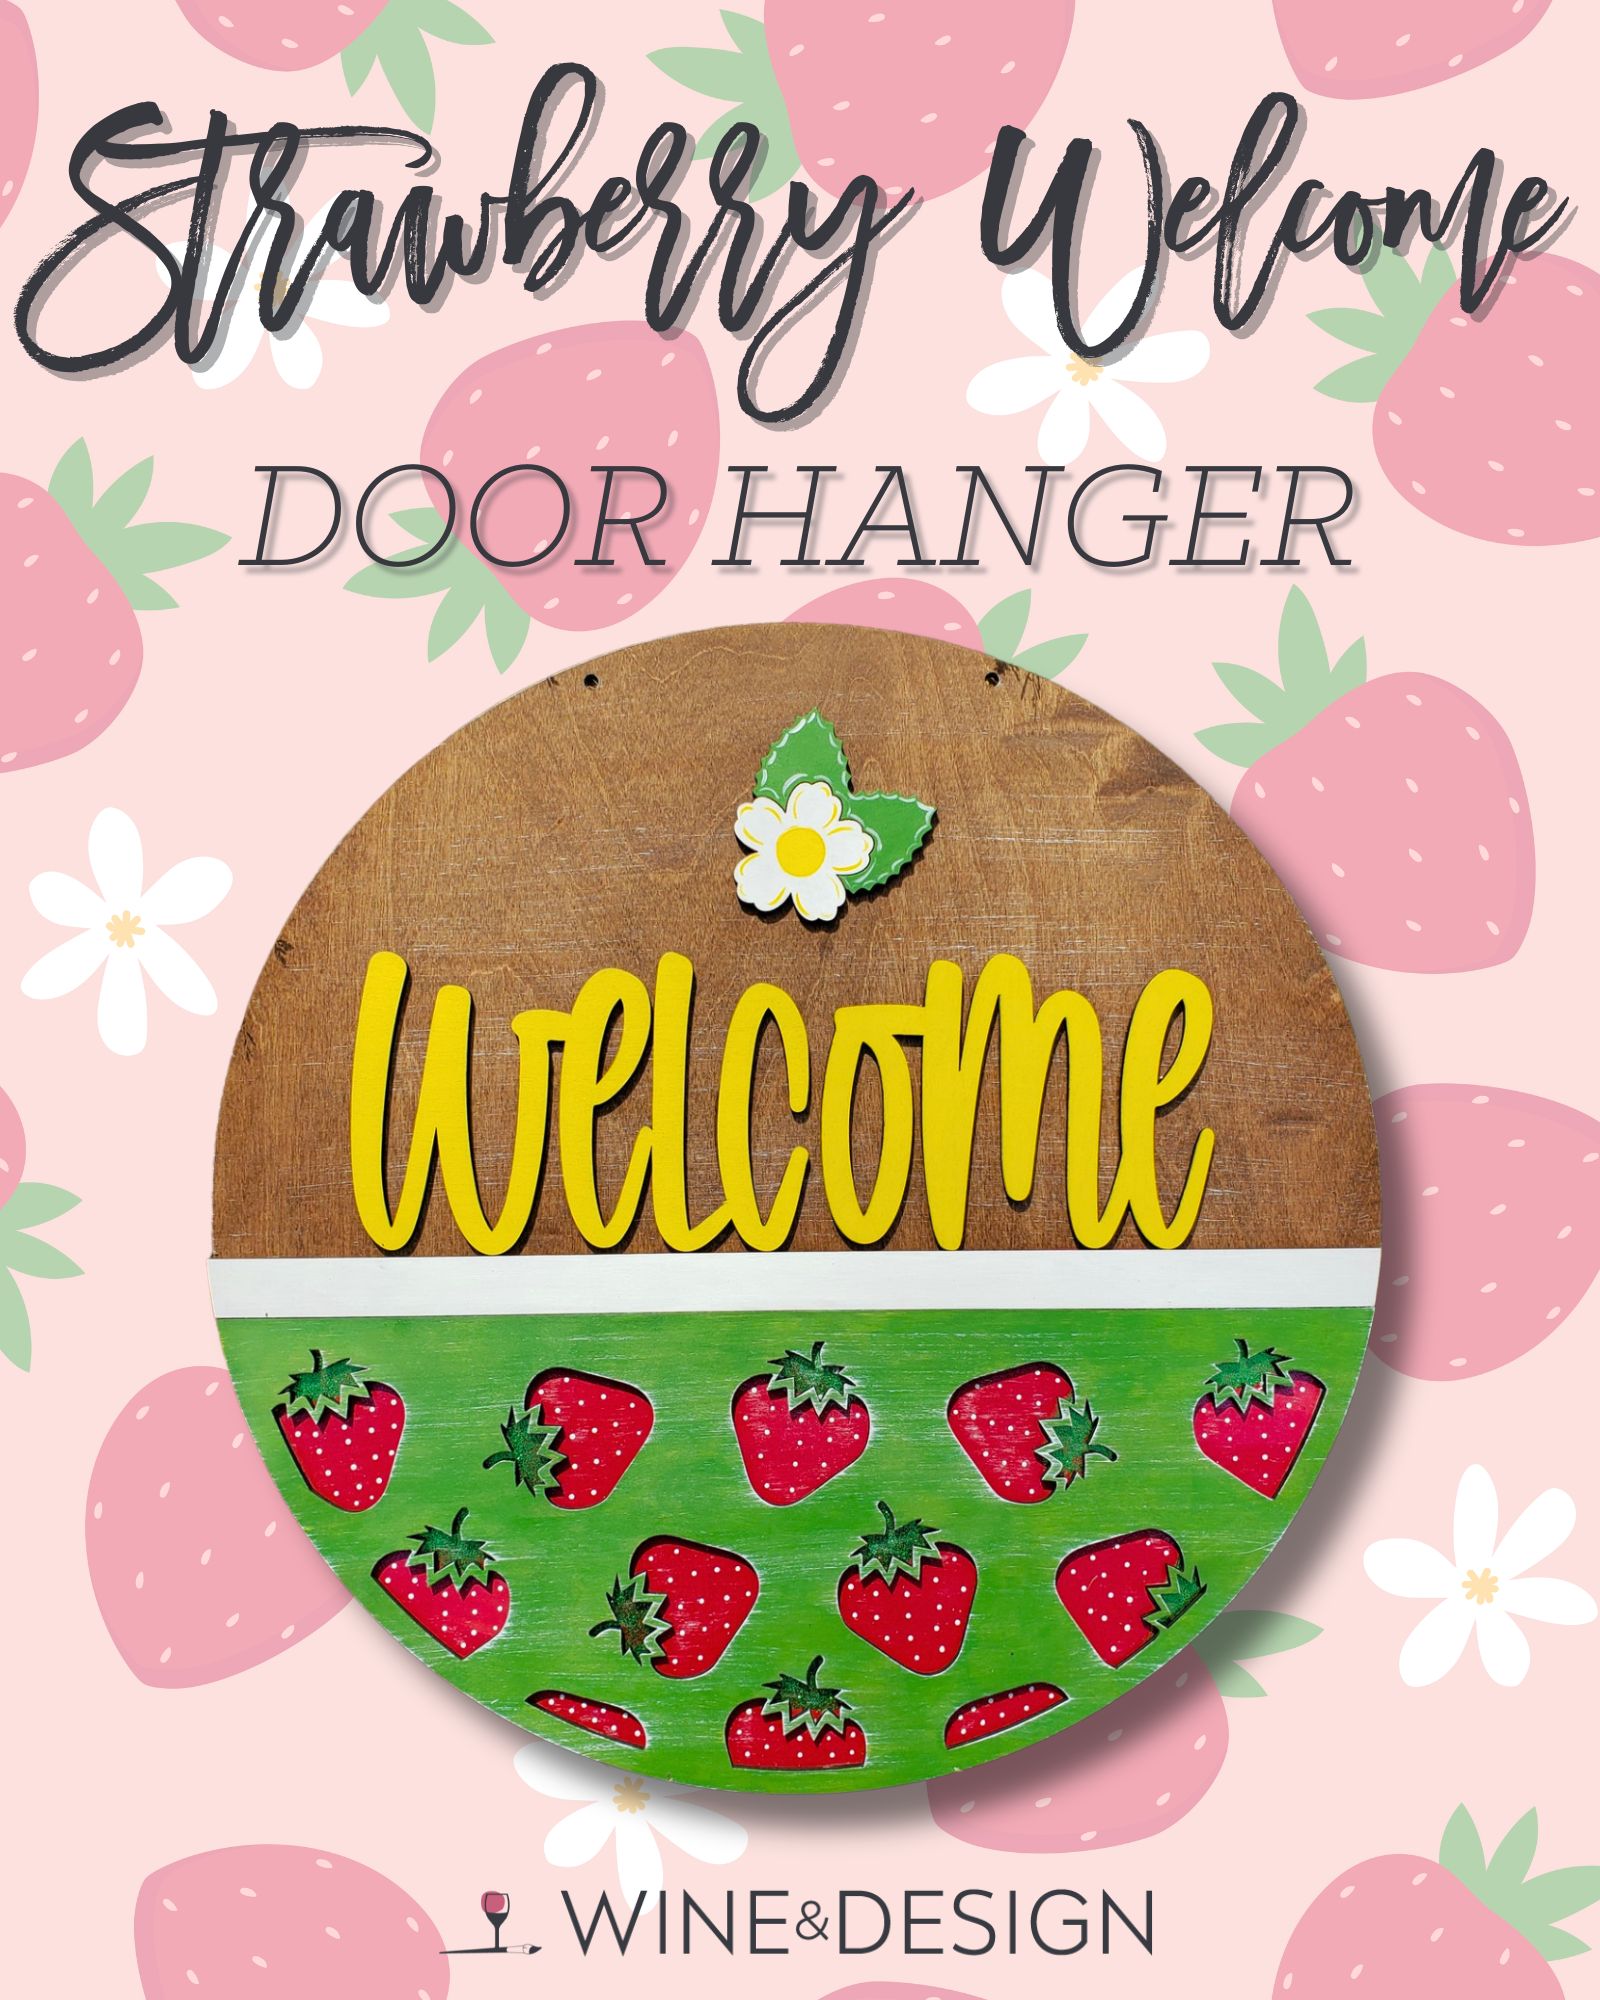 Strawberry Welcome Wooden Door Hanger